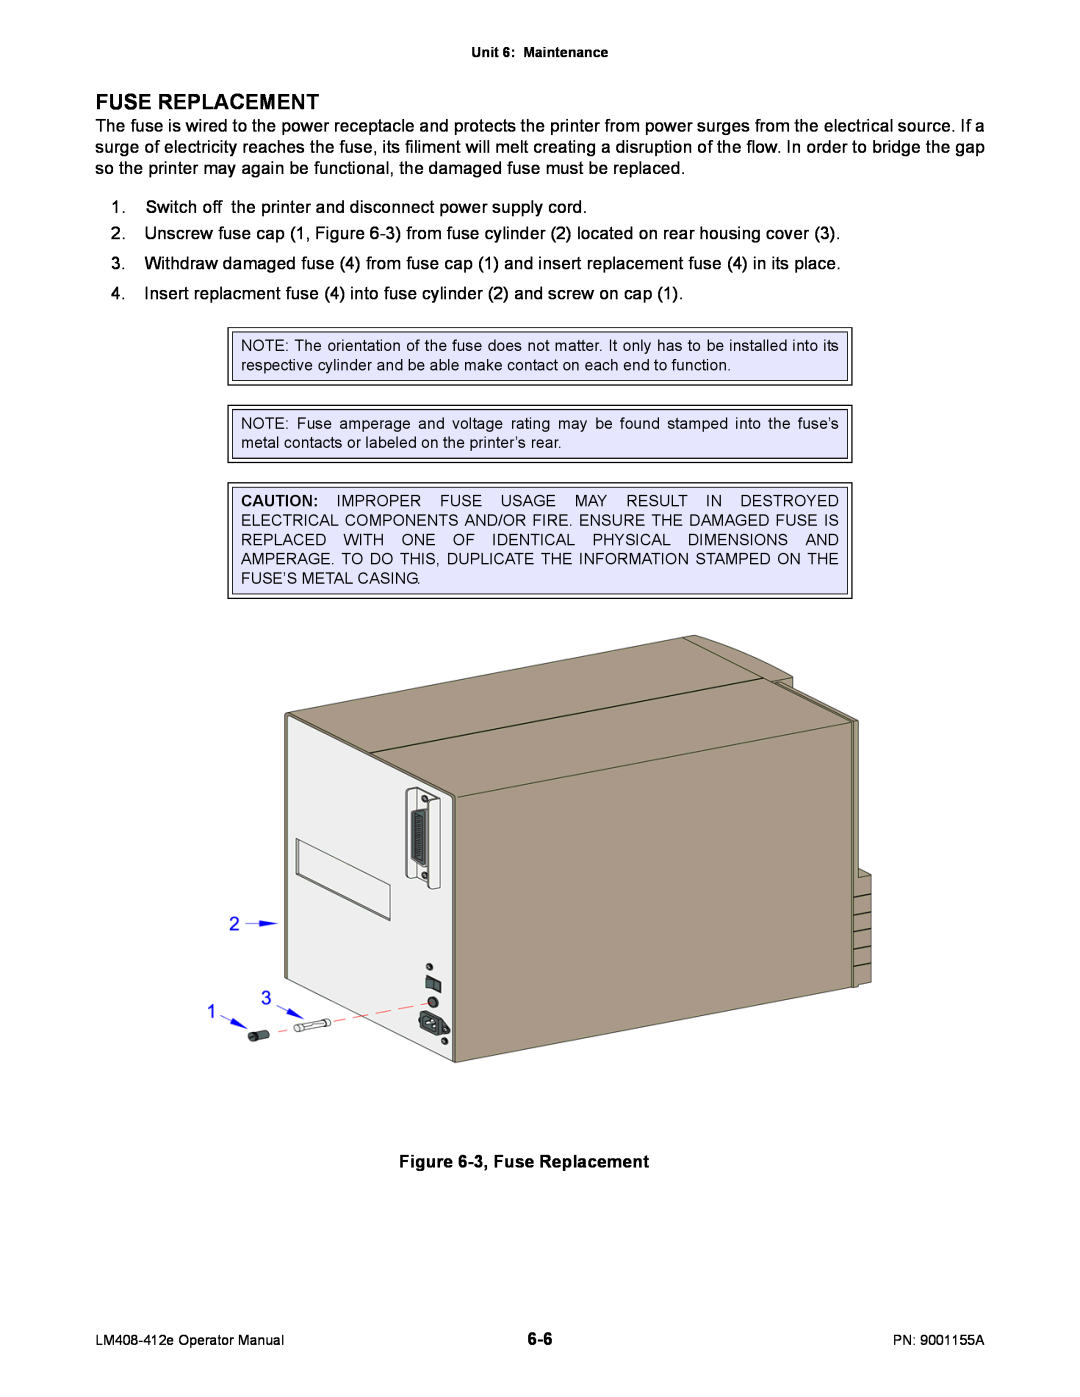 SATO LM408/412E manual 3, Fuse Replacement 